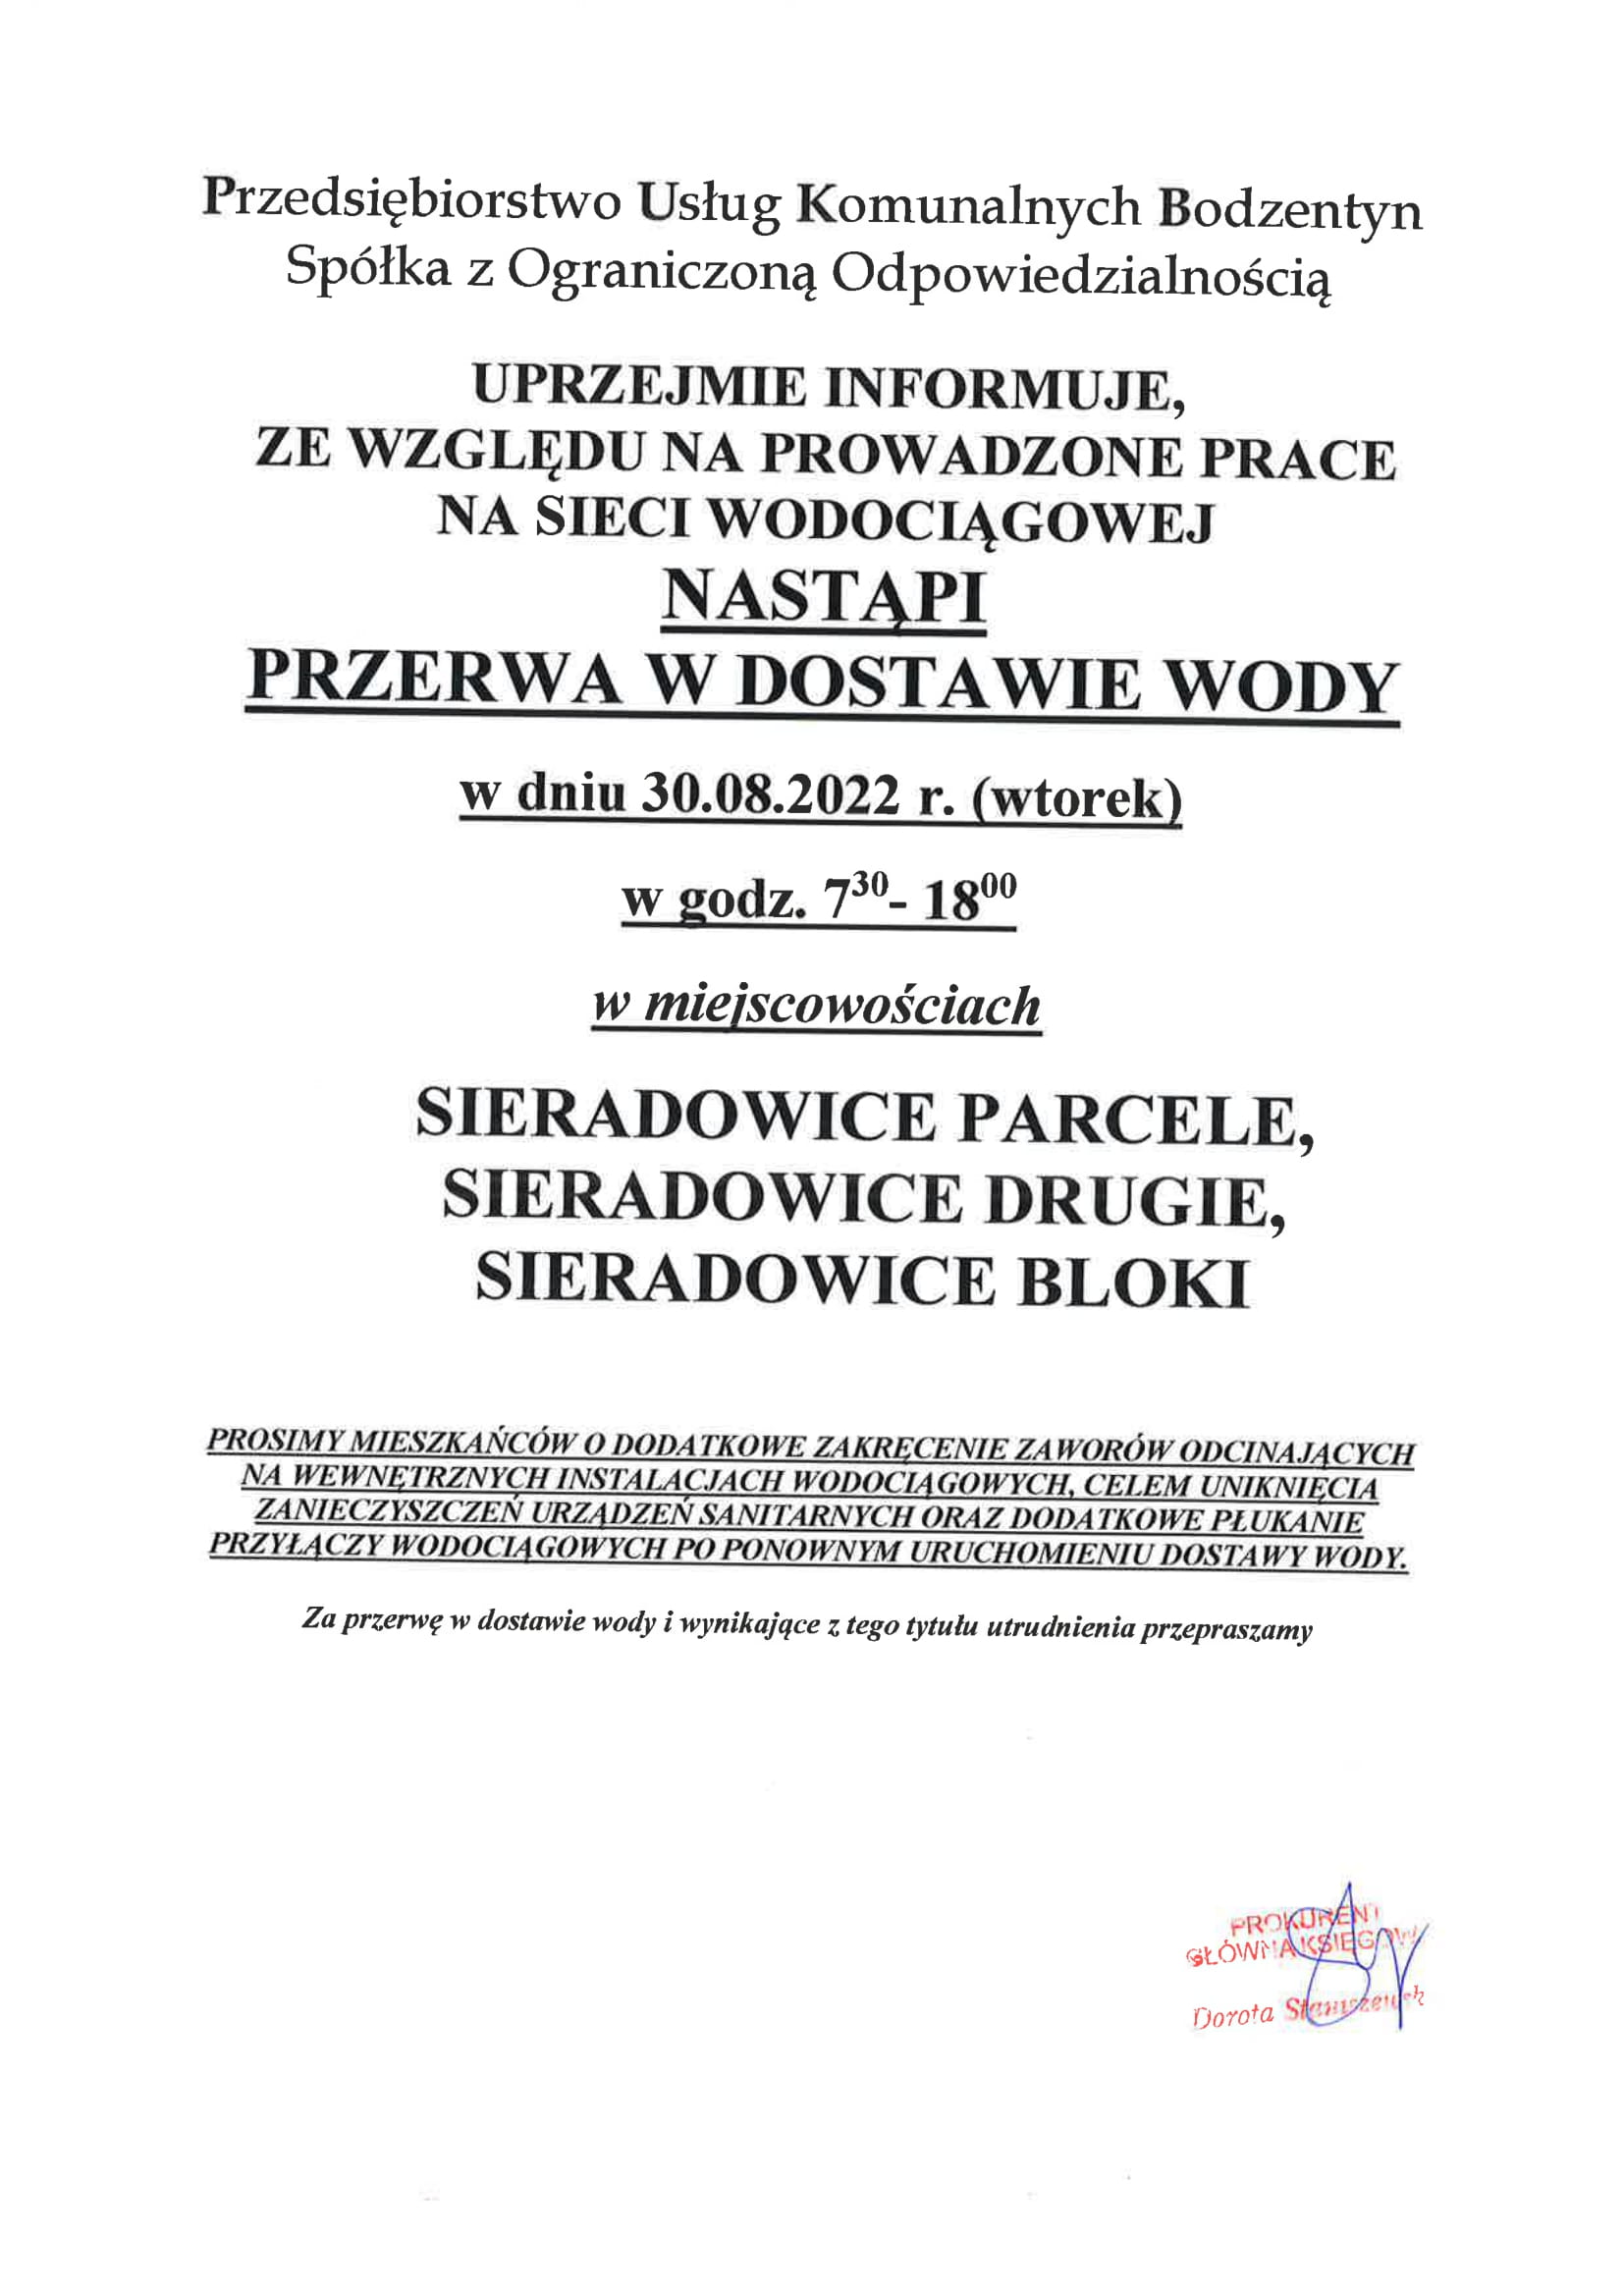 OGOSZENIE zamknicie wody 2022 08 30 Sieradowice Parcele Sieradowice Drugie Sieradowice Bloki 1